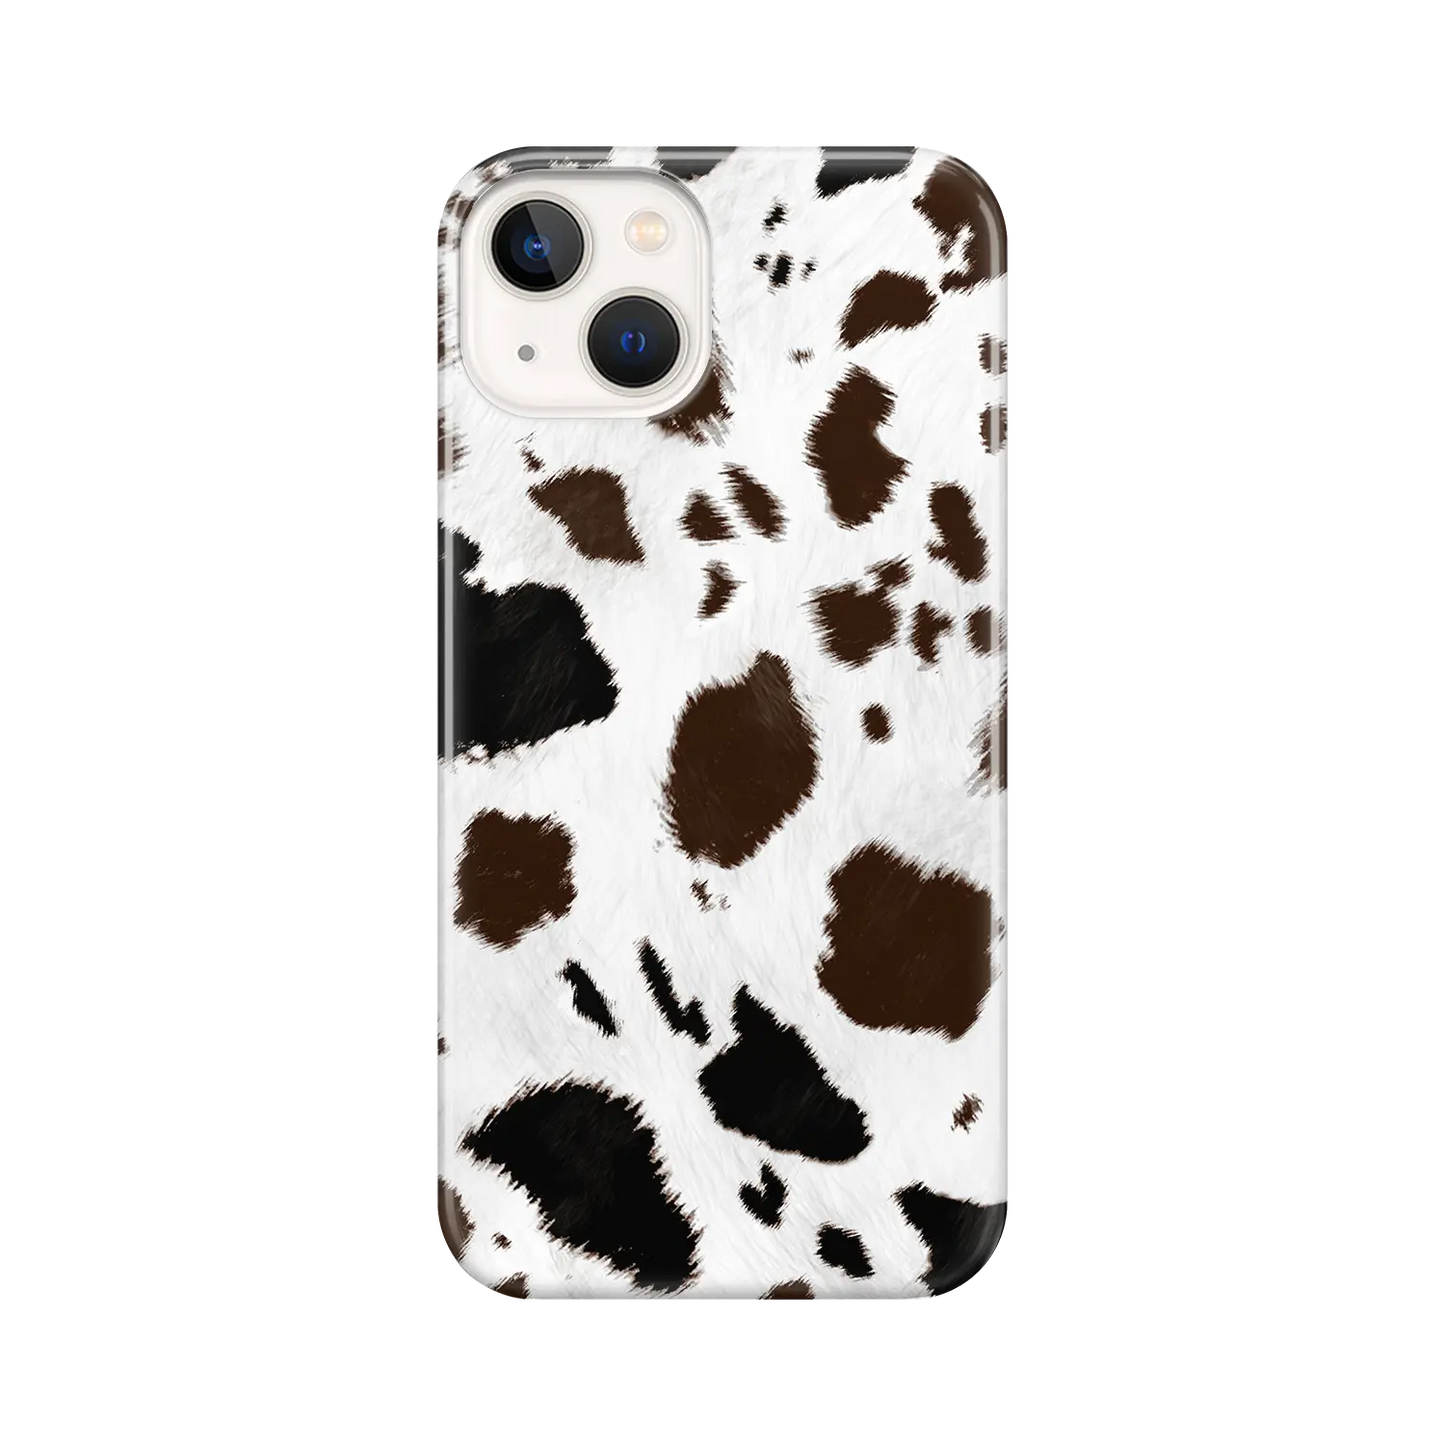 Moo Print - Custom iPhone Case